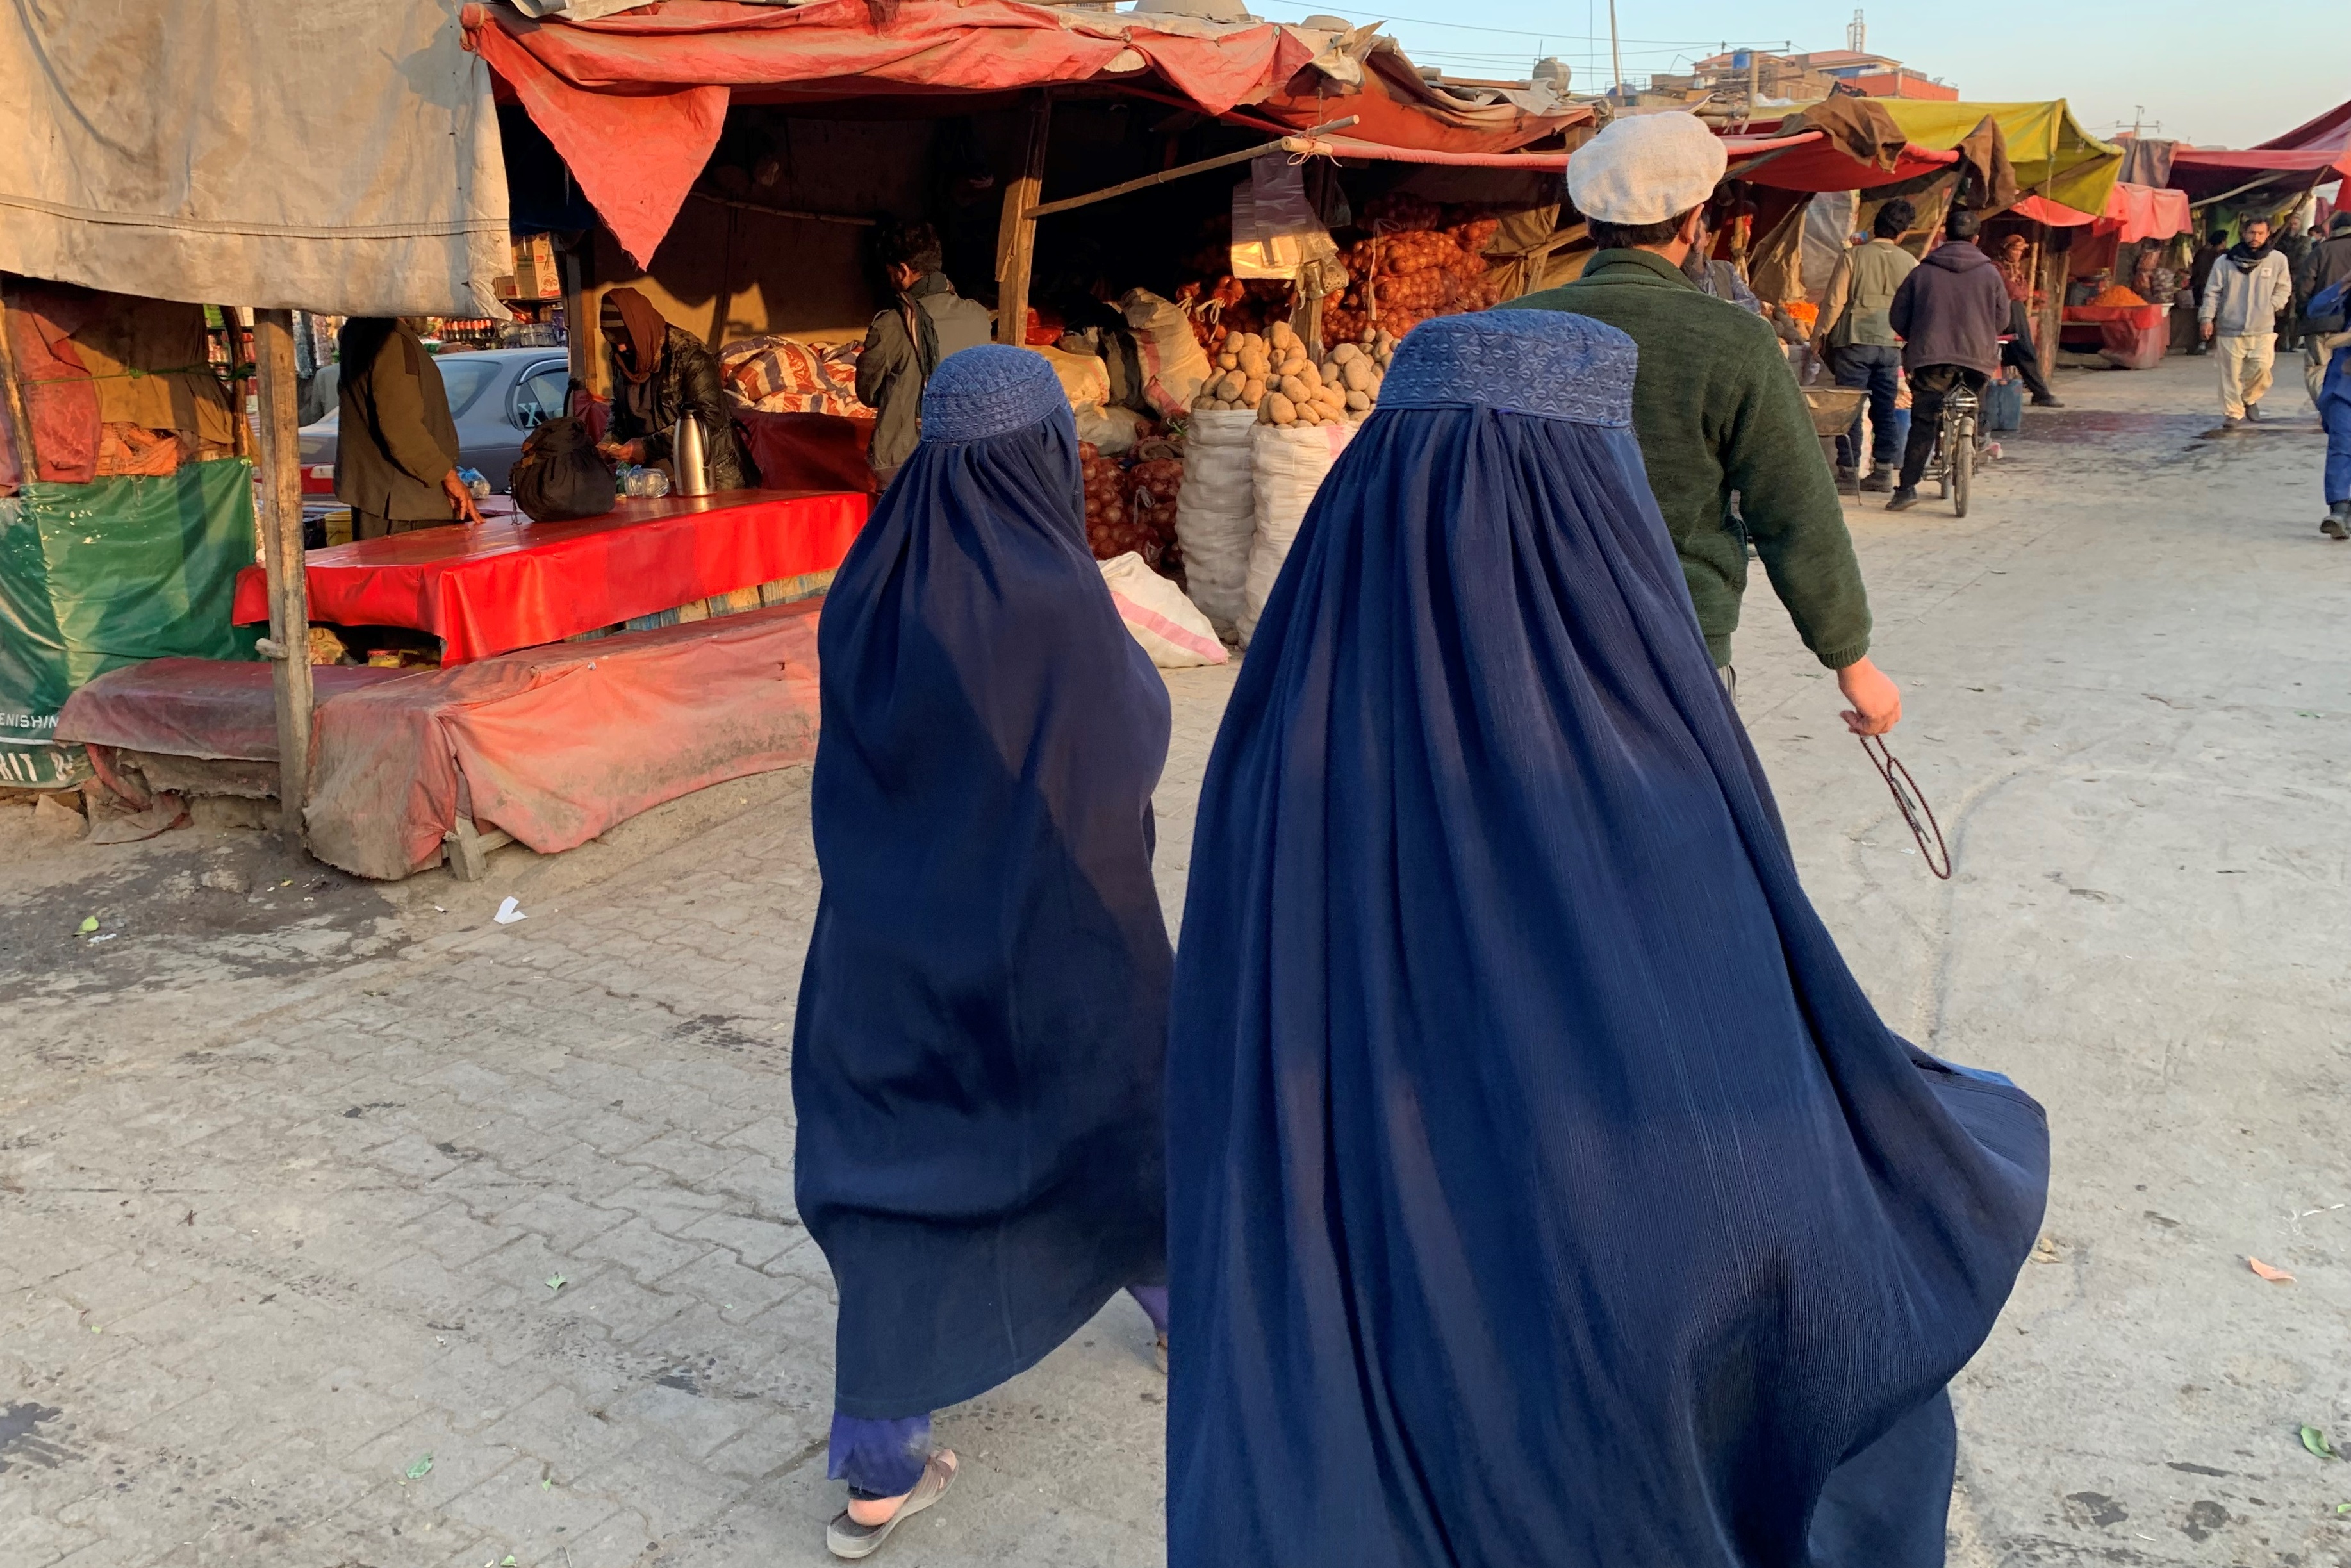 Dos mujeres caminan por el mercado de Kabul el pasado 11 de diciembre, previo a las nuevas medidas que restringen, aún más, los derechos de las mujeres. Fotografía: EFE.